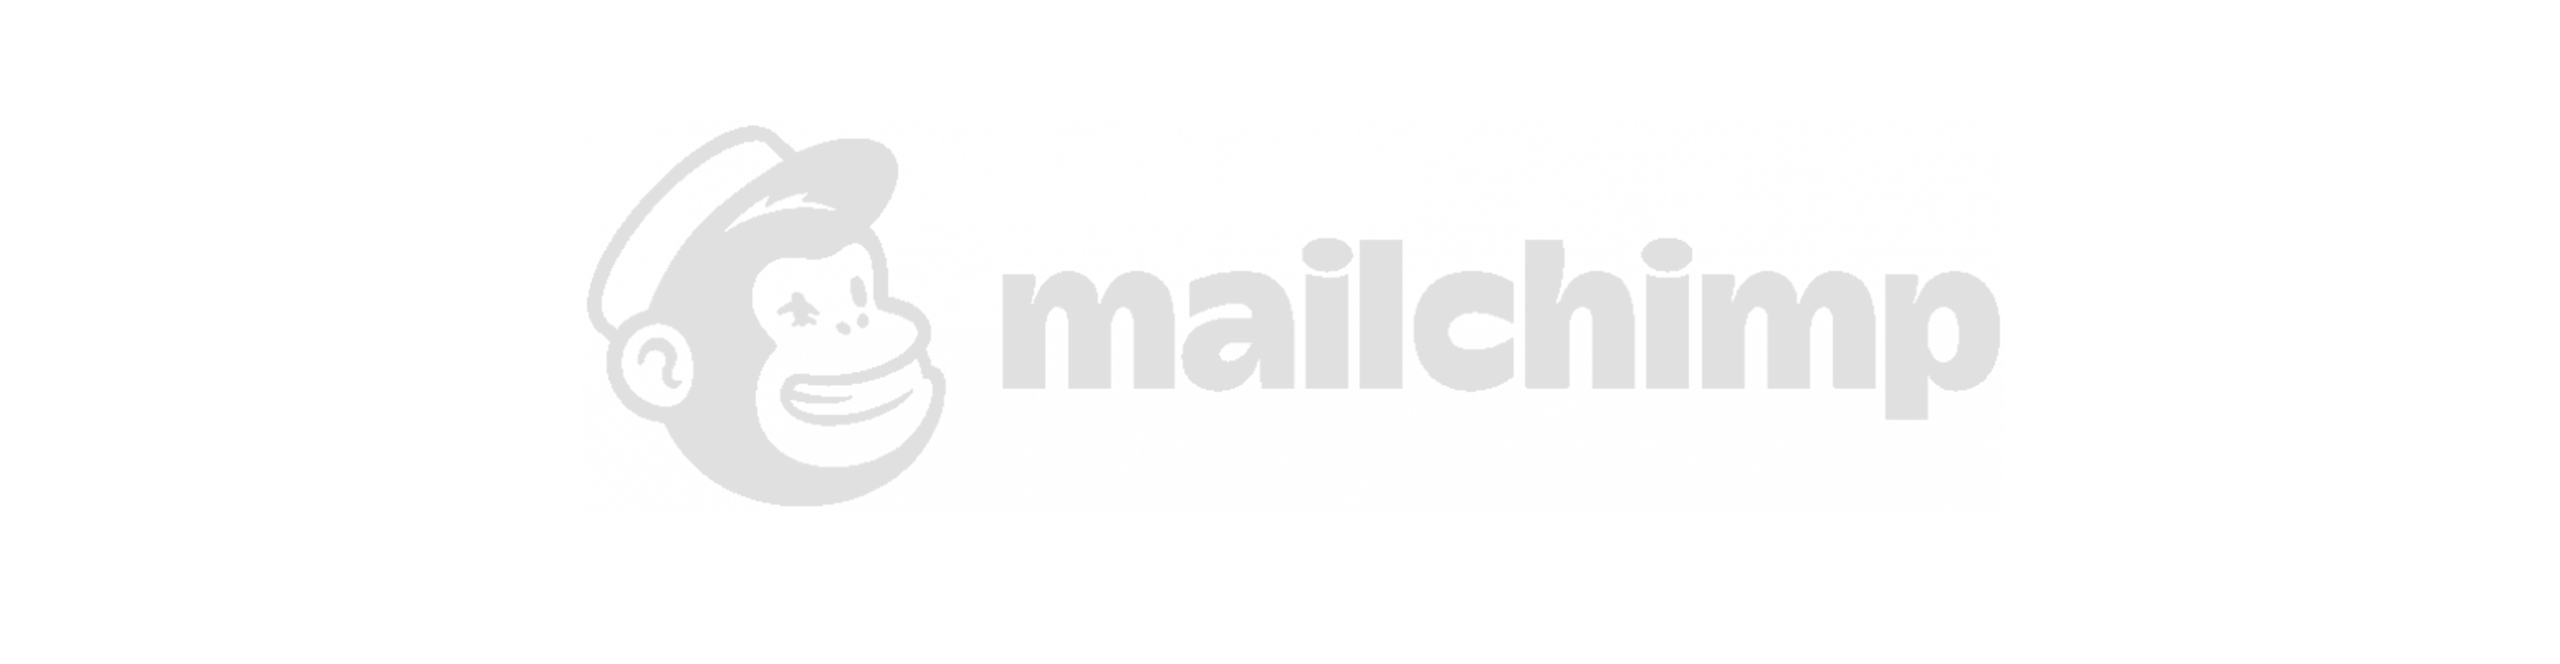 mailchimp_logo.svg